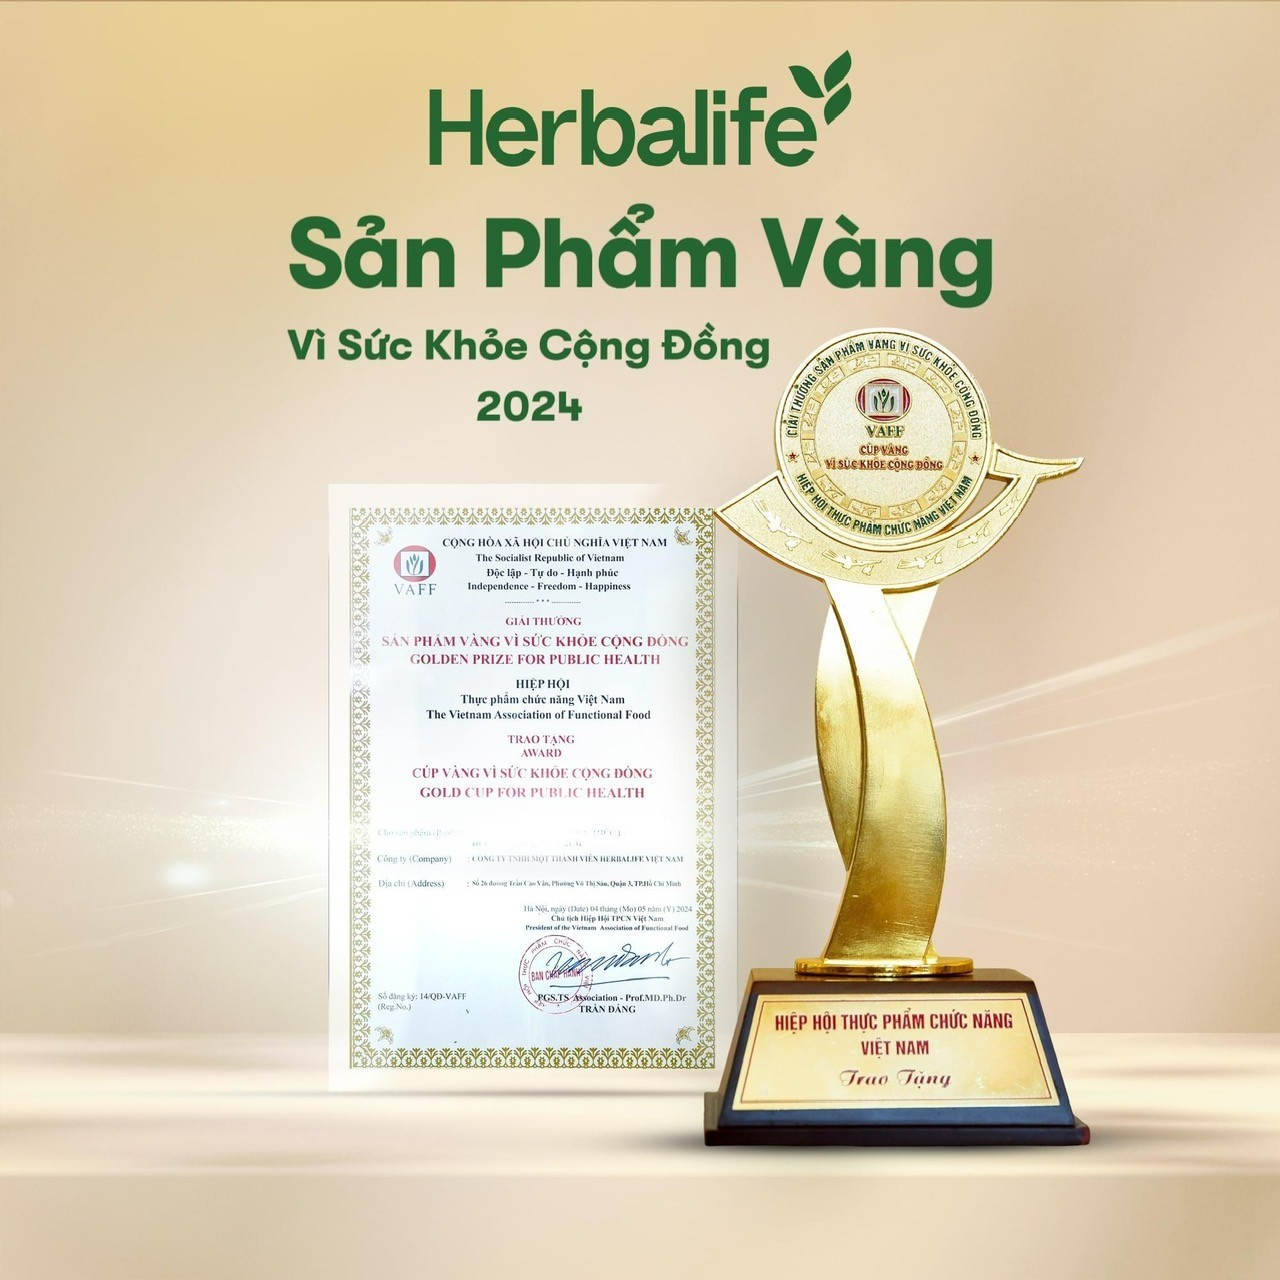 Các sản phẩm của Herbalife được trao giải “Sản Phẩm Vàng Vì Sức Khỏe Cộng Đồng 2024 - Ảnh 2